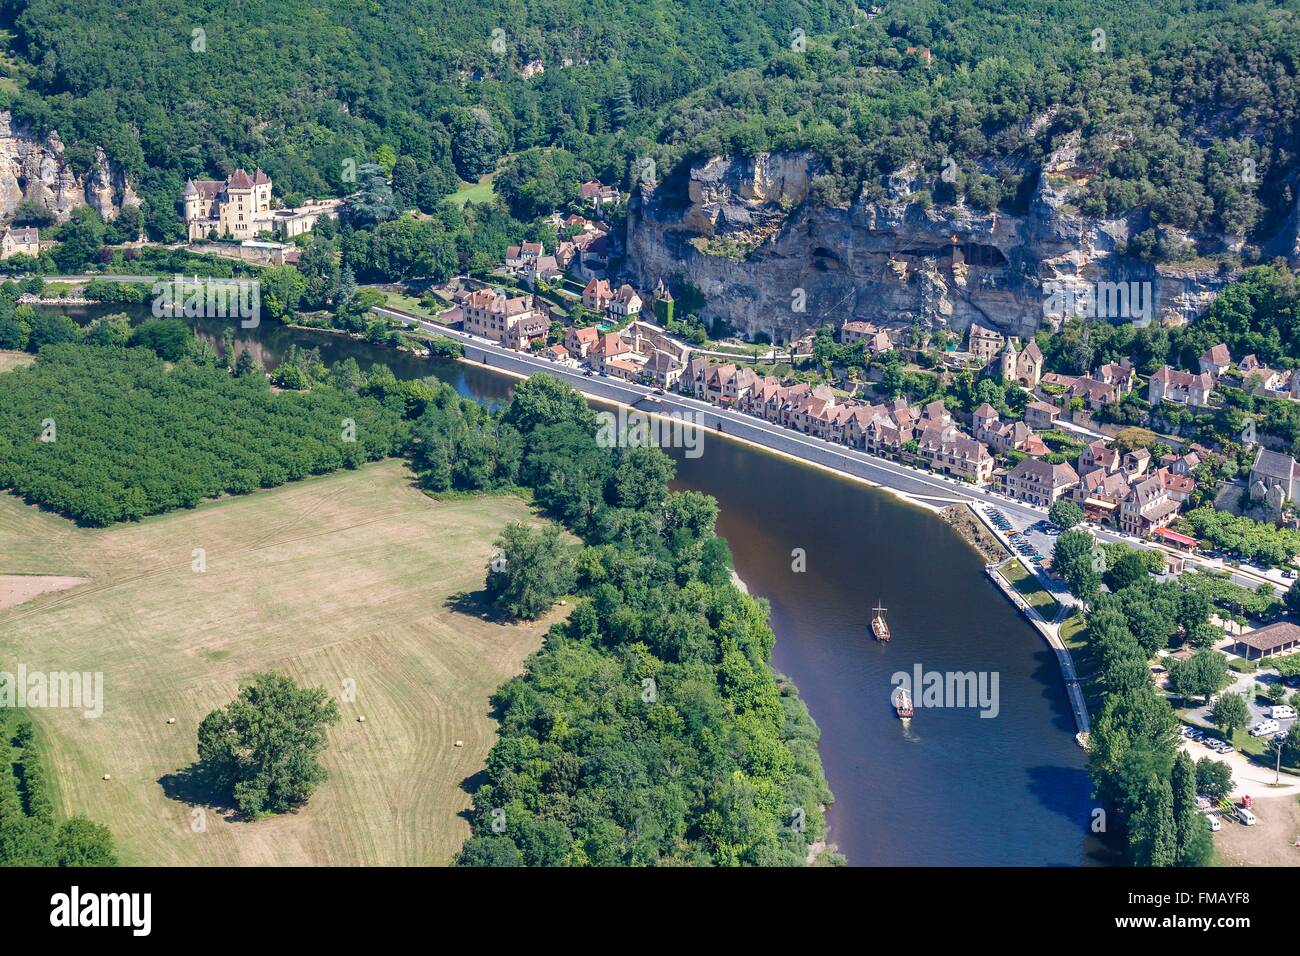 France, Dordogne, La Roque Gageac, labelled Les Plus Beaux Villages de France (The Most Beautiful Villages of France), the Stock Photo